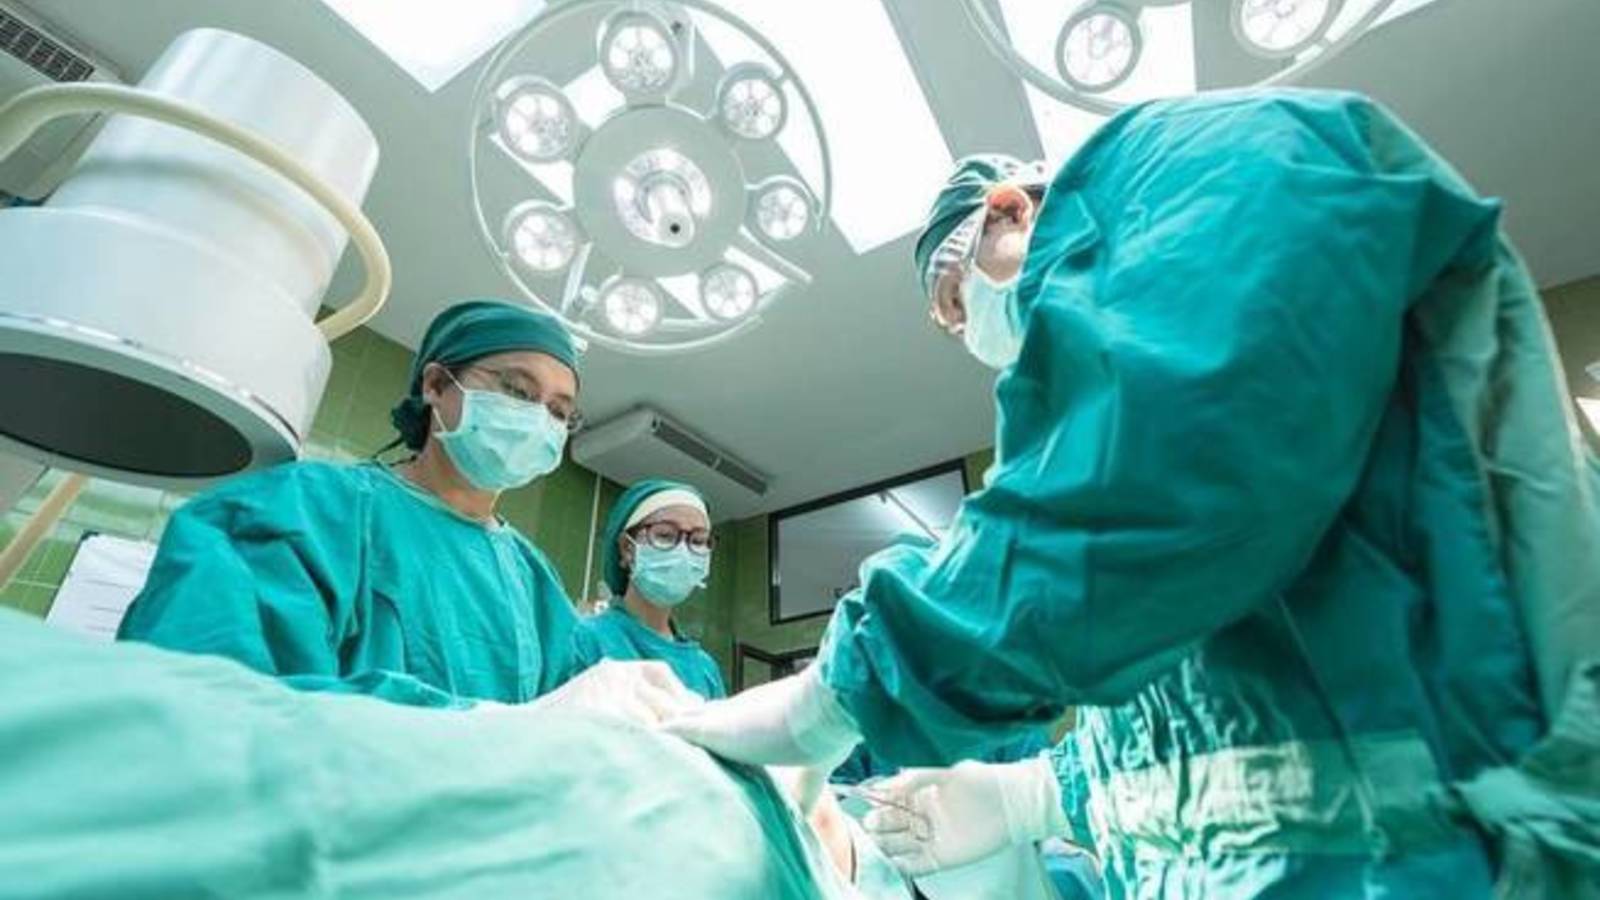 Dimenticano garze nell’addome due chirurghi condannati